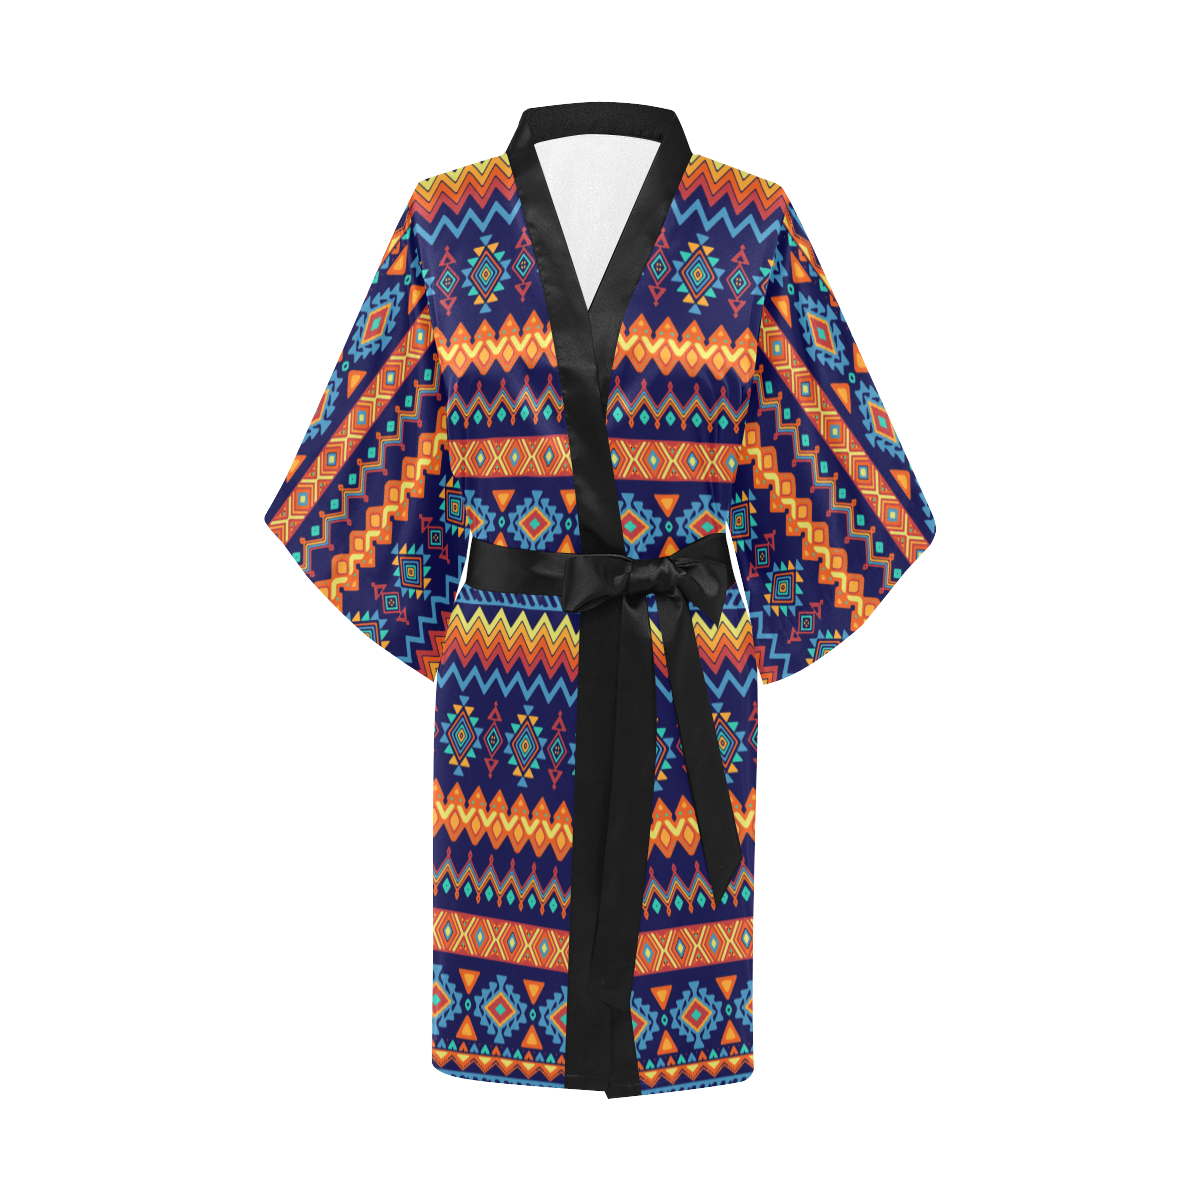 Awesome Ethnic Boho Design Kimono Robe